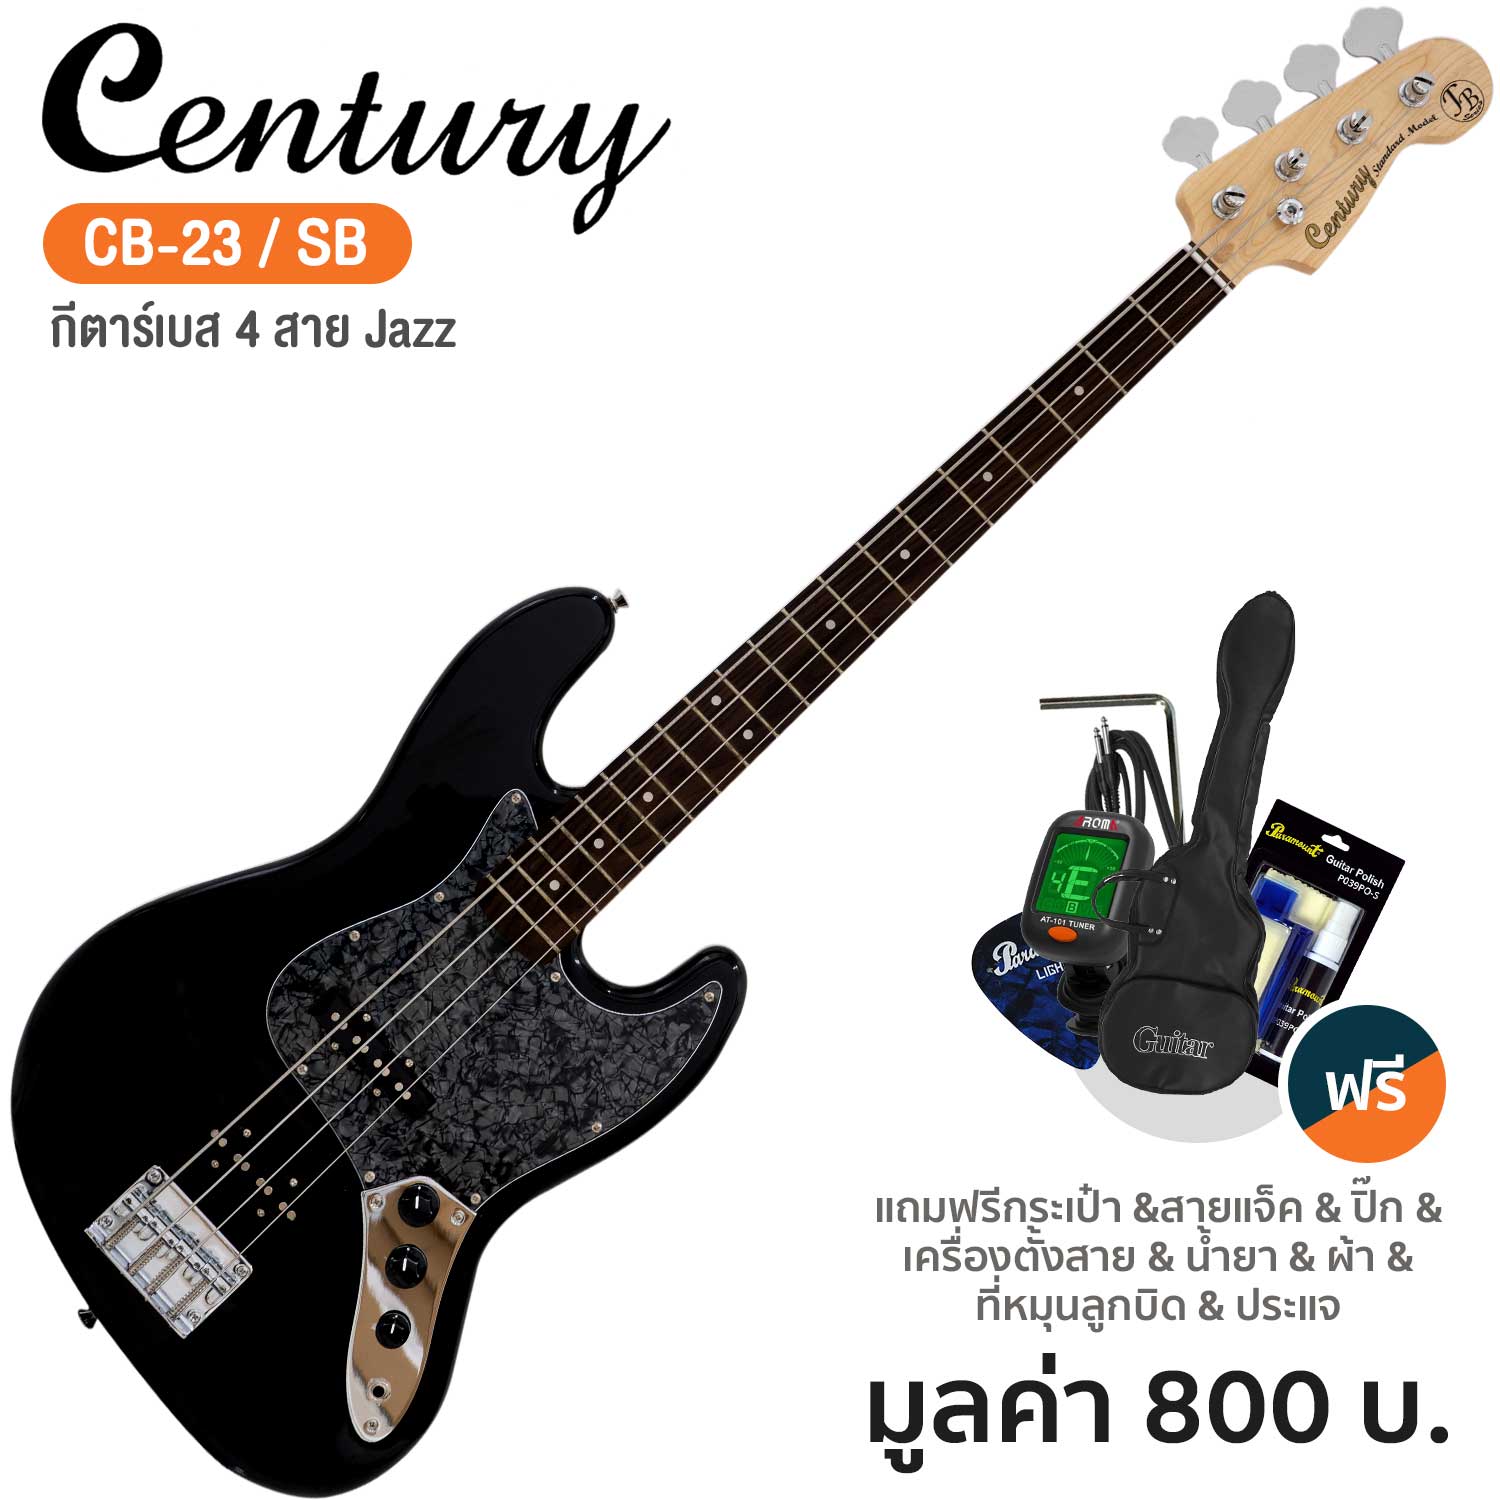 Century CB-23 Jazz Bass กีตาร์เบส 4 สาย ไม้เบสวู้ด + แถมฟรีกระเป๋าเบส & จูนเนอร์ & ชุดทำความสะอาด & สายแจ็ค & ปิ๊ก